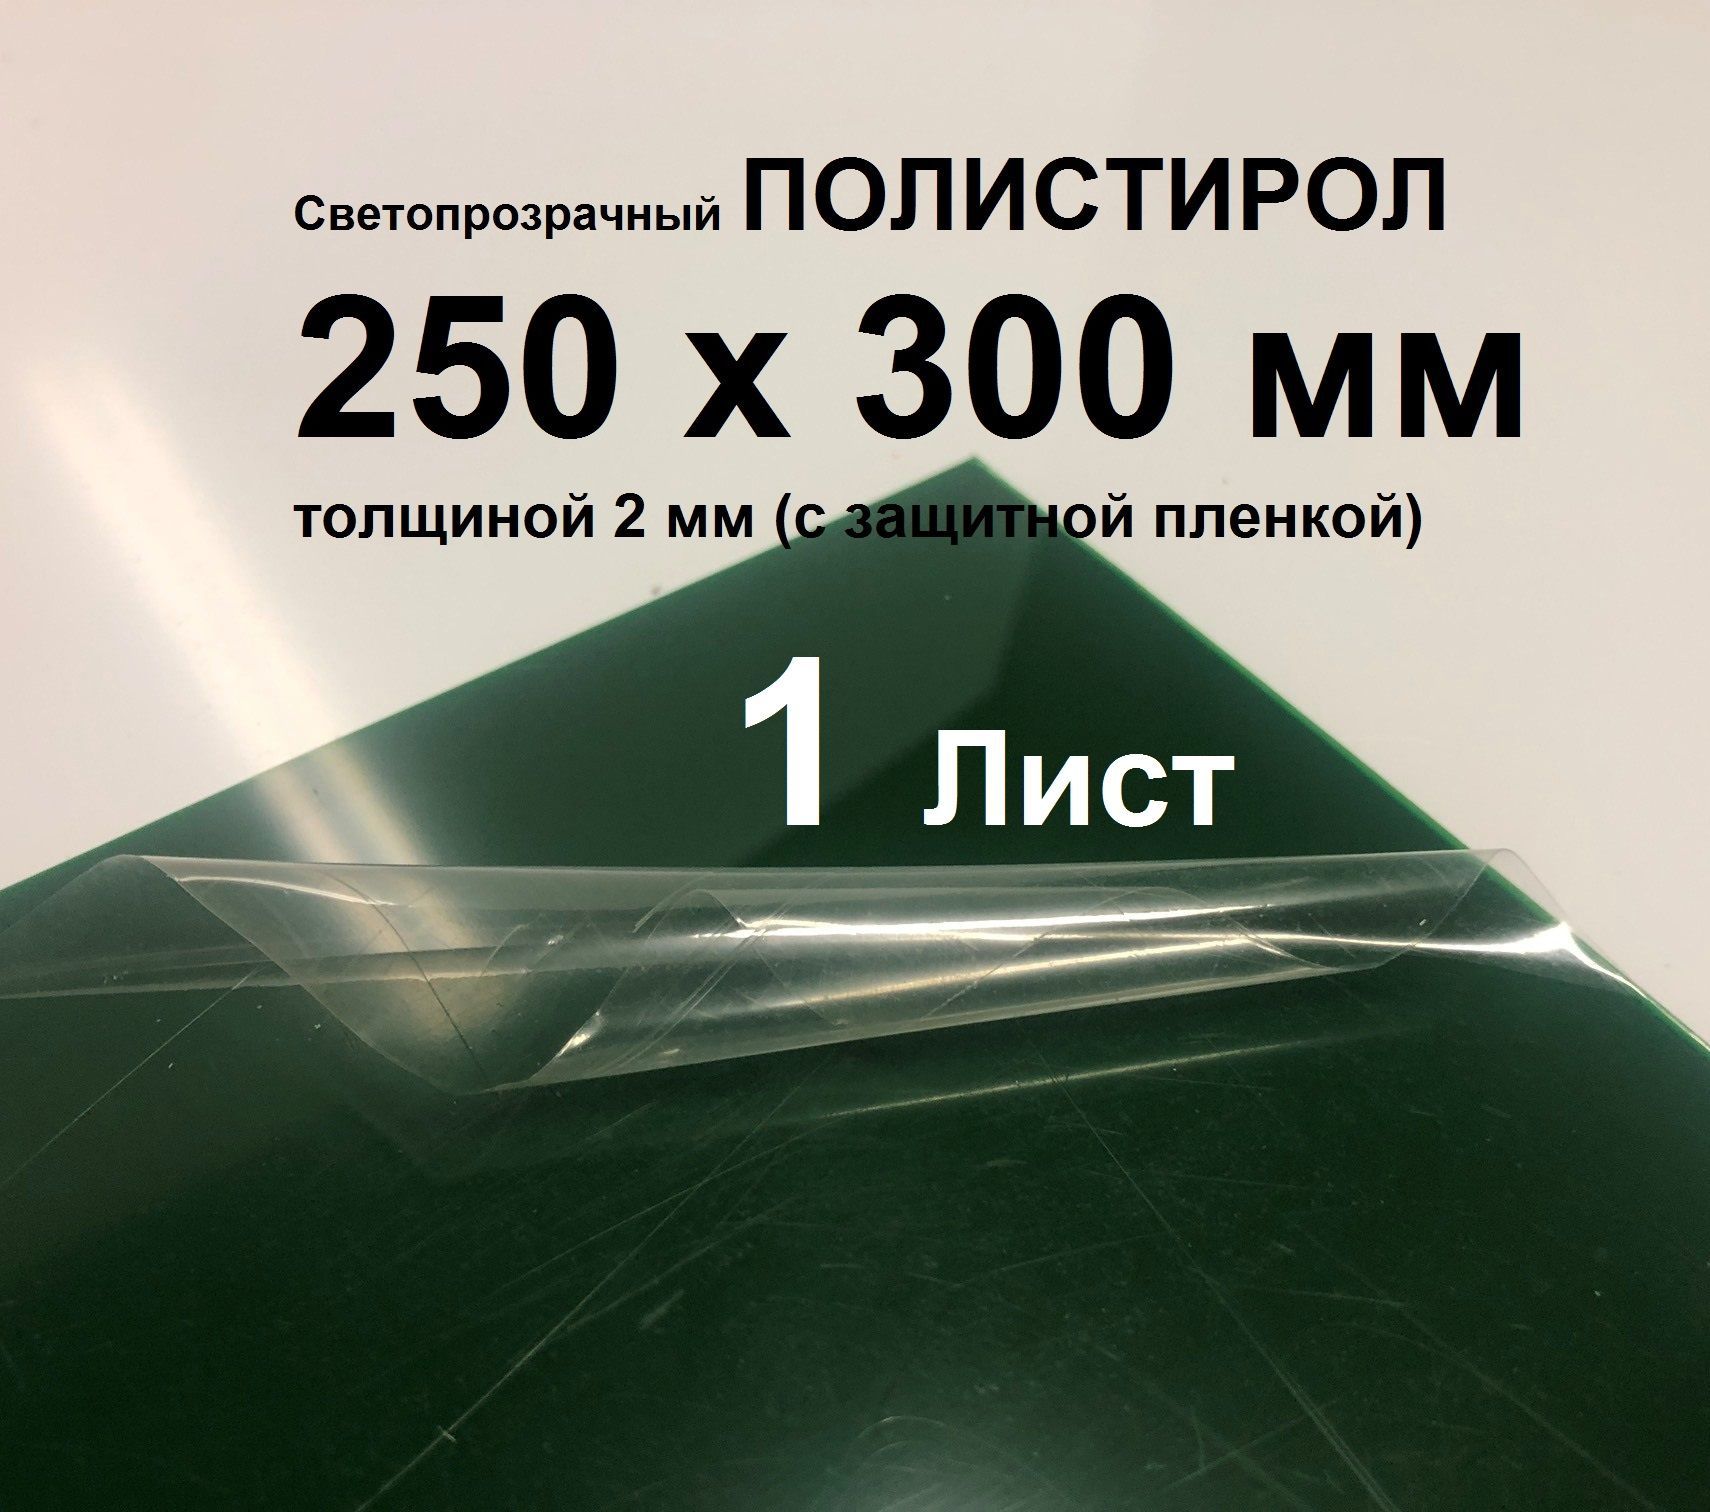 СветопрозрачныйЗеленыйполистирол250*300*2ммсзащитнойпленкой(1шт.)